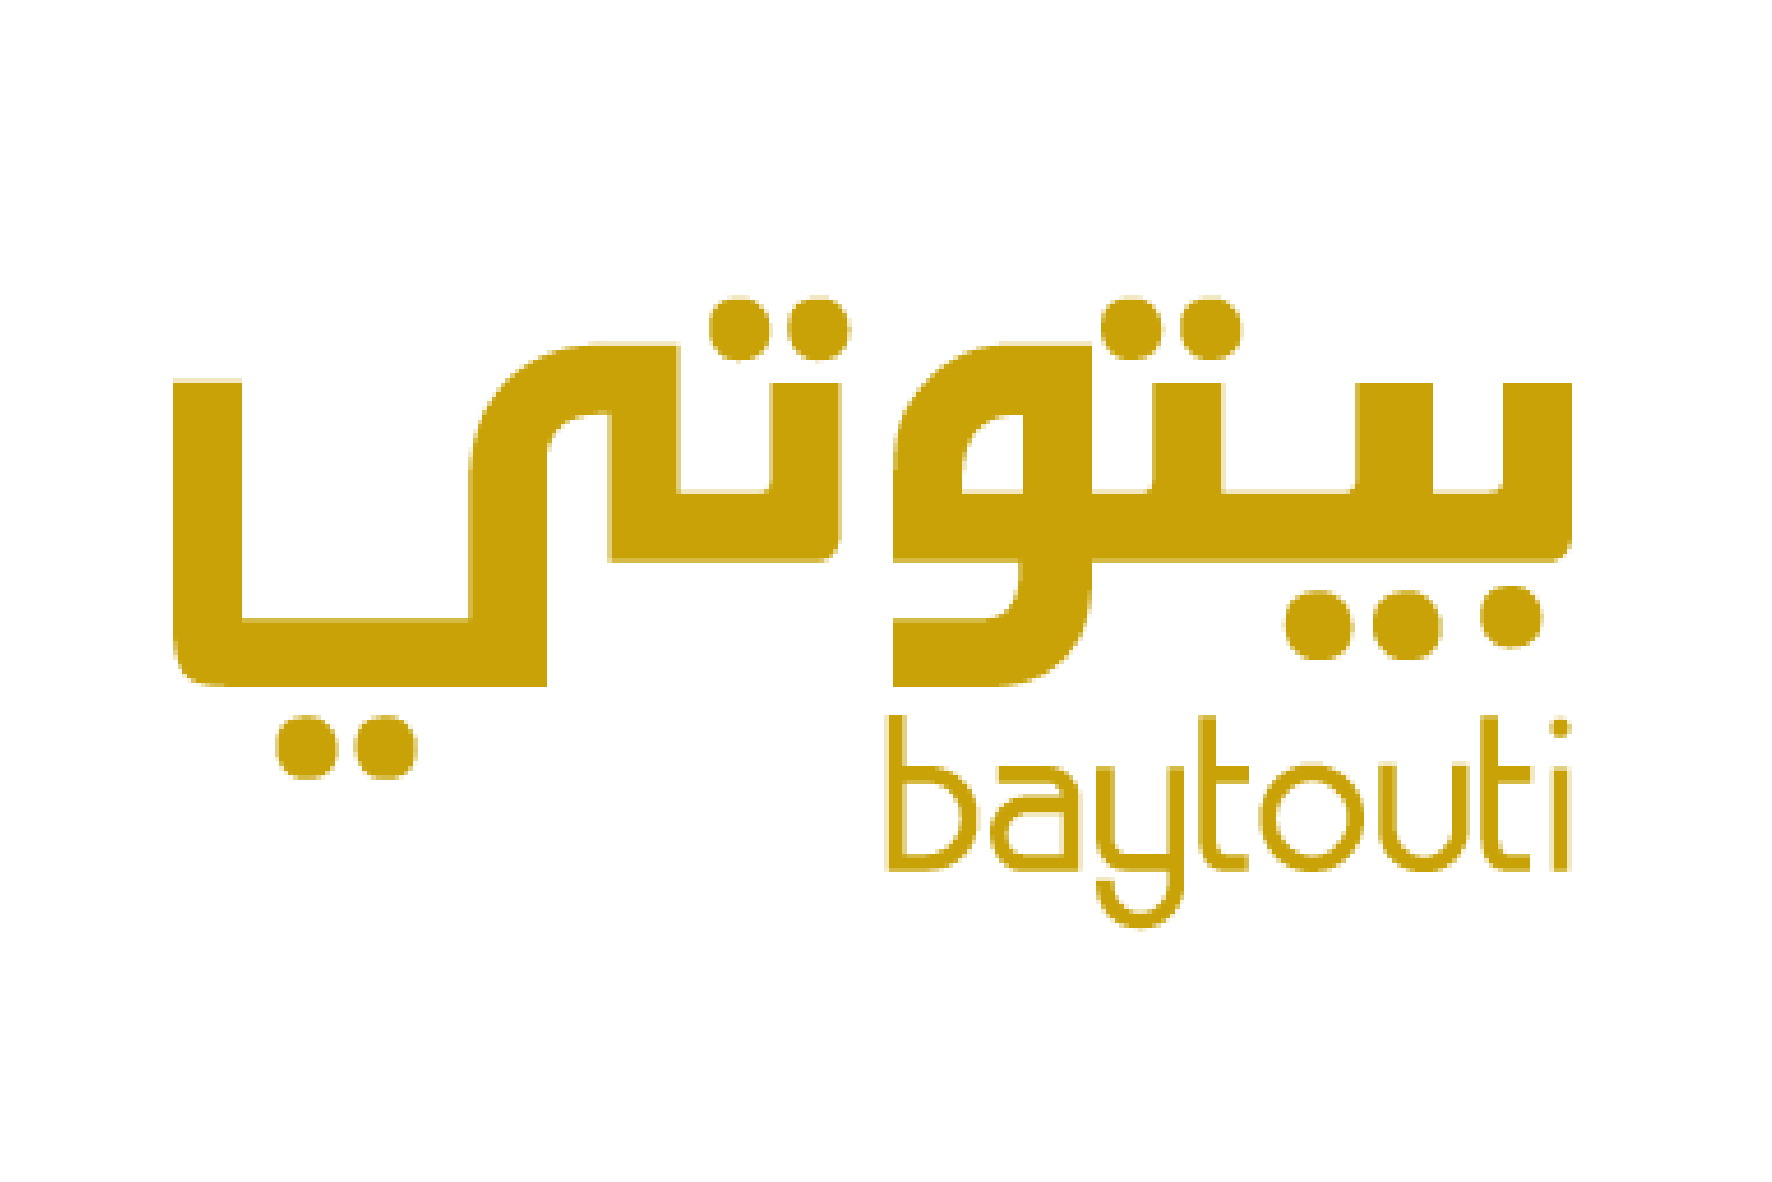 Baytouti